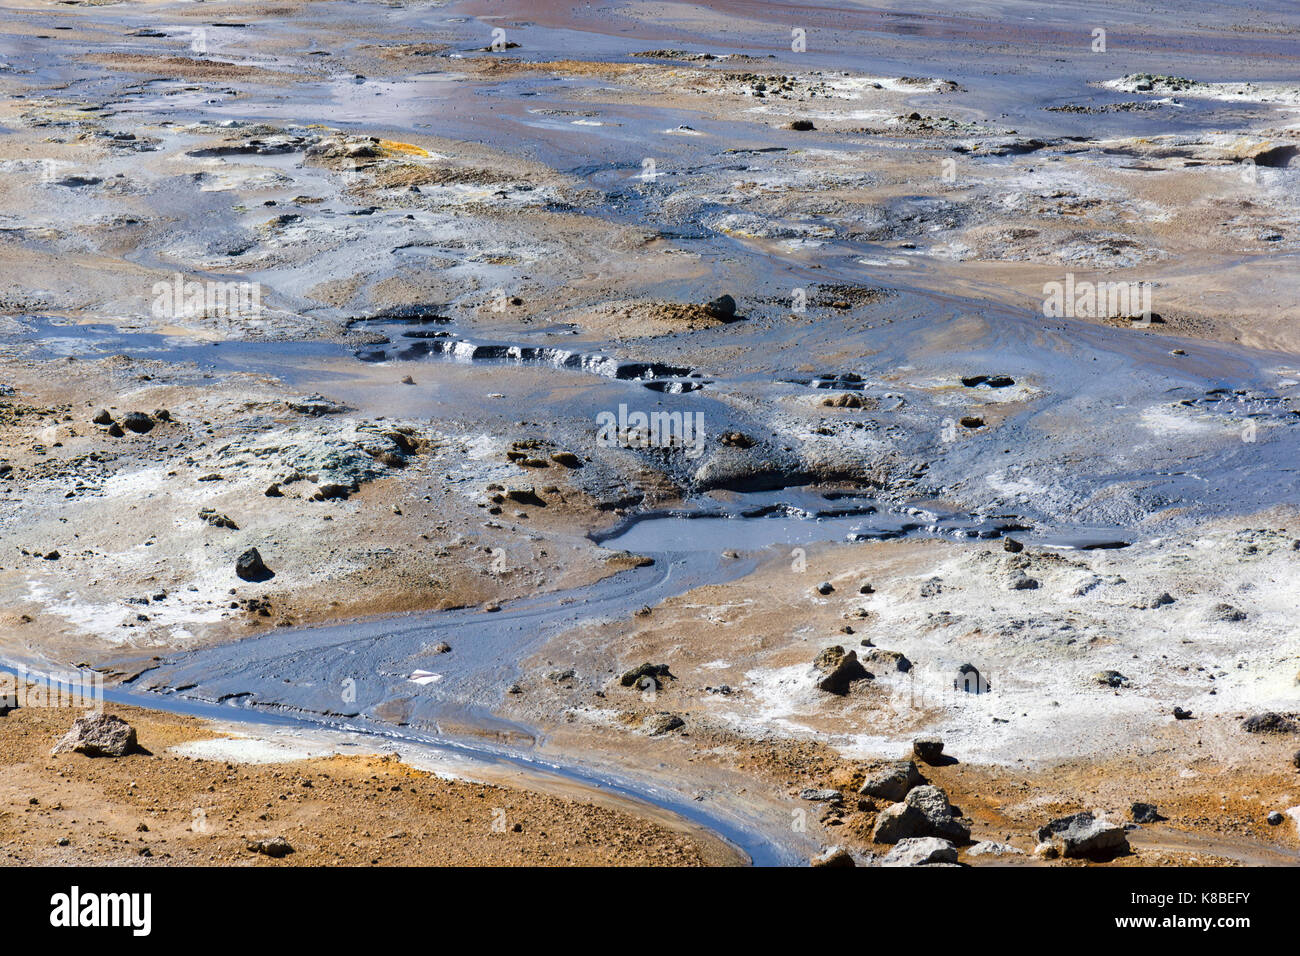 Graufarbener heißer Schlamm im Geothermiegebiet Námafjall Hverir, Island Stockfoto